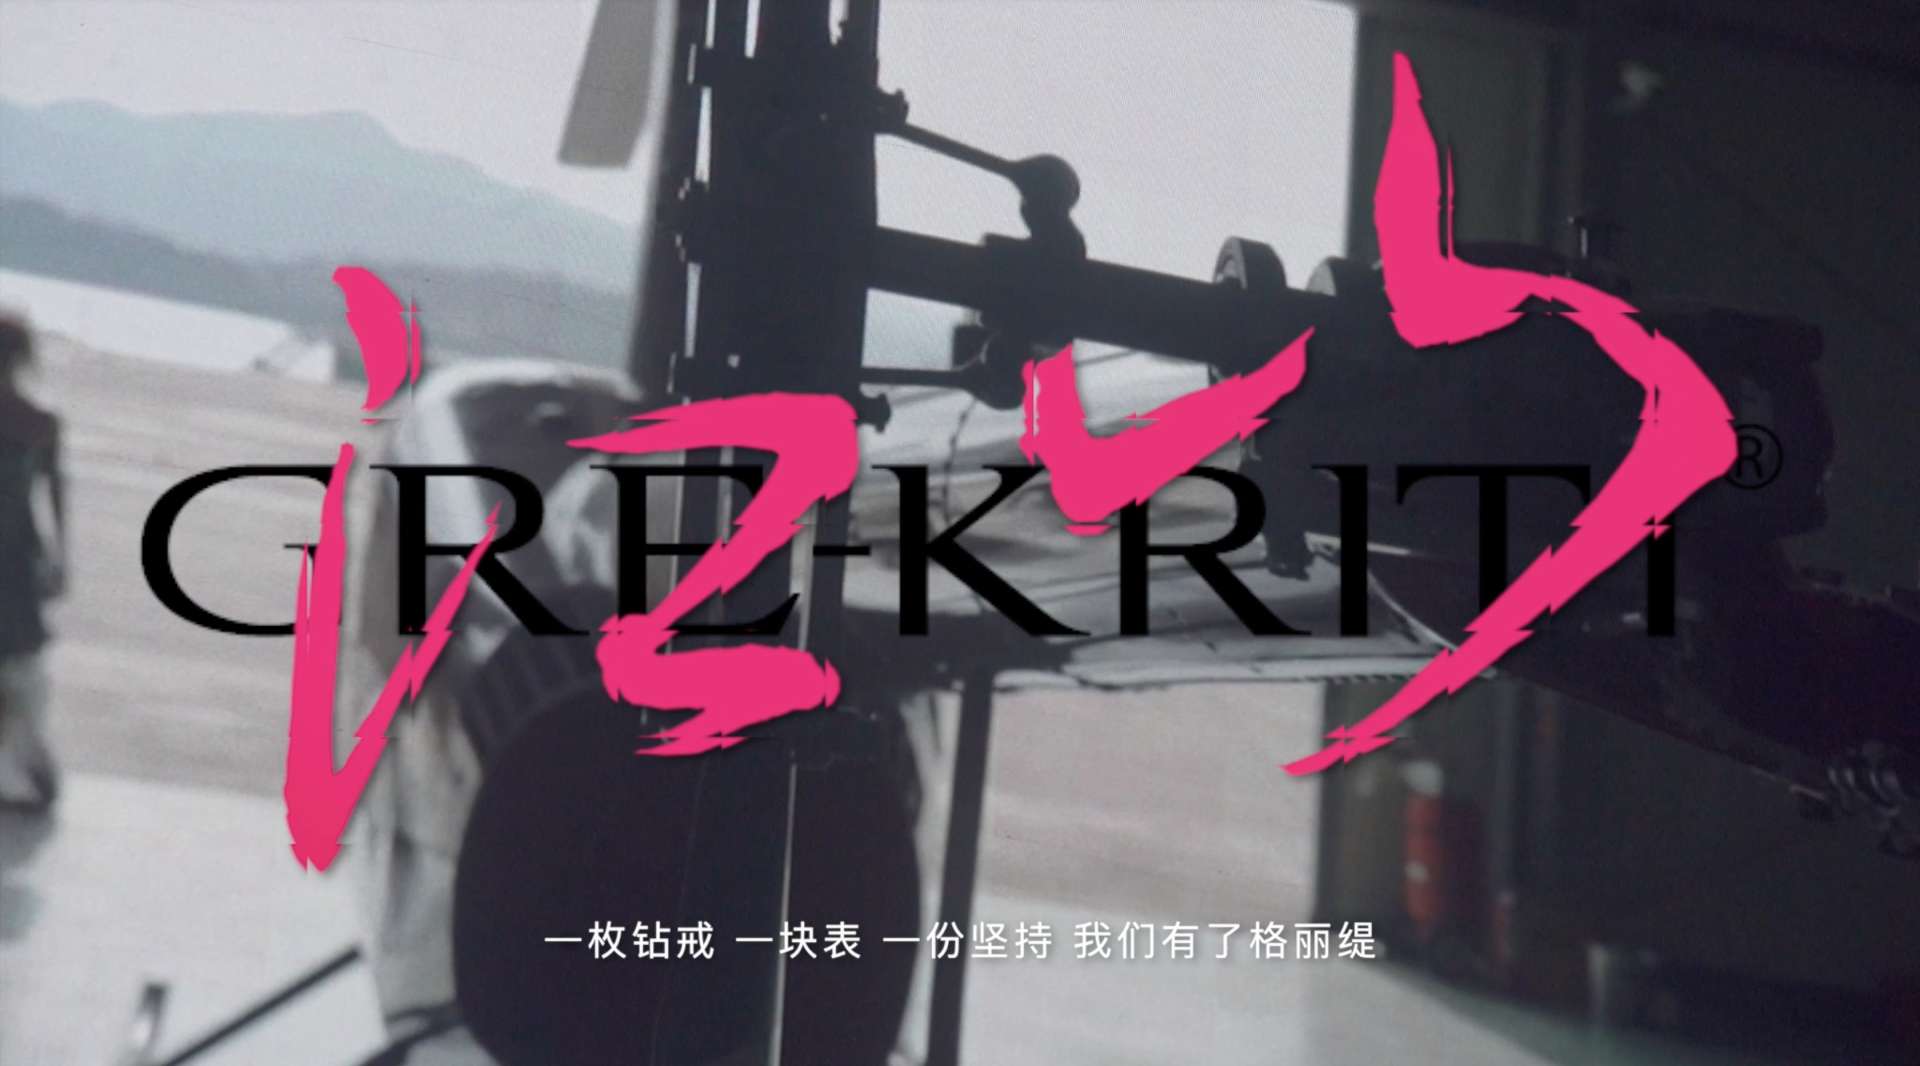 《江山》格丽缇GRE-KRITI品牌四周年年会暨新品发布盛典